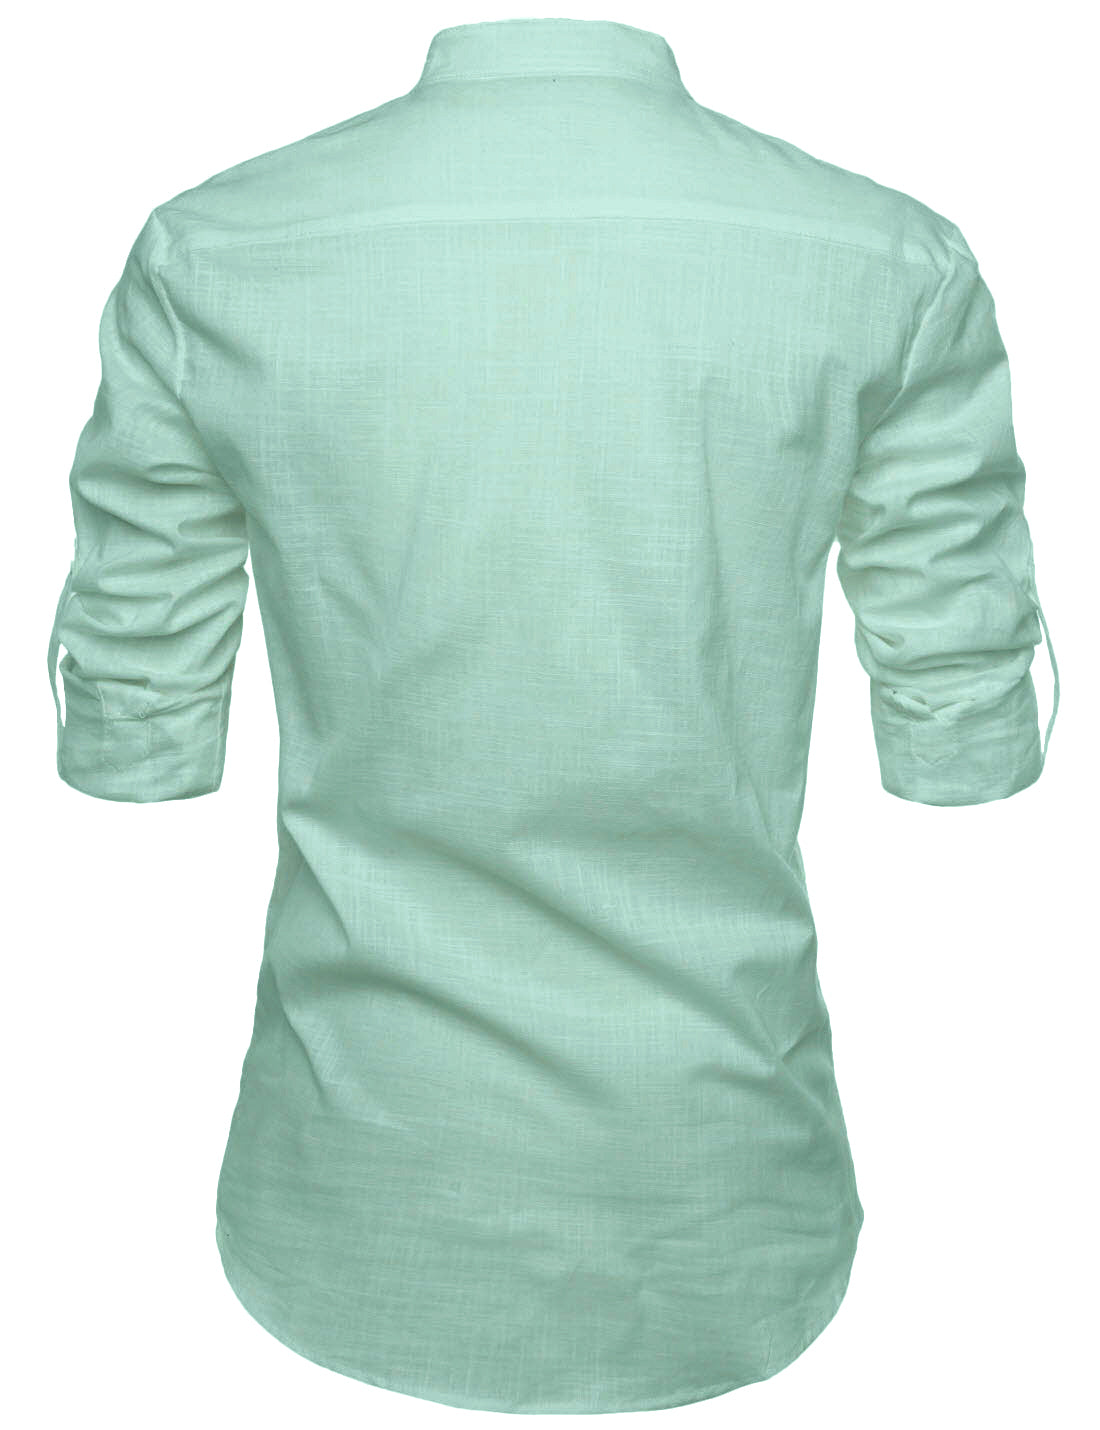 Men's Cotton Blend Fabric Full Sleeve White Common Kurta - Pack of 2